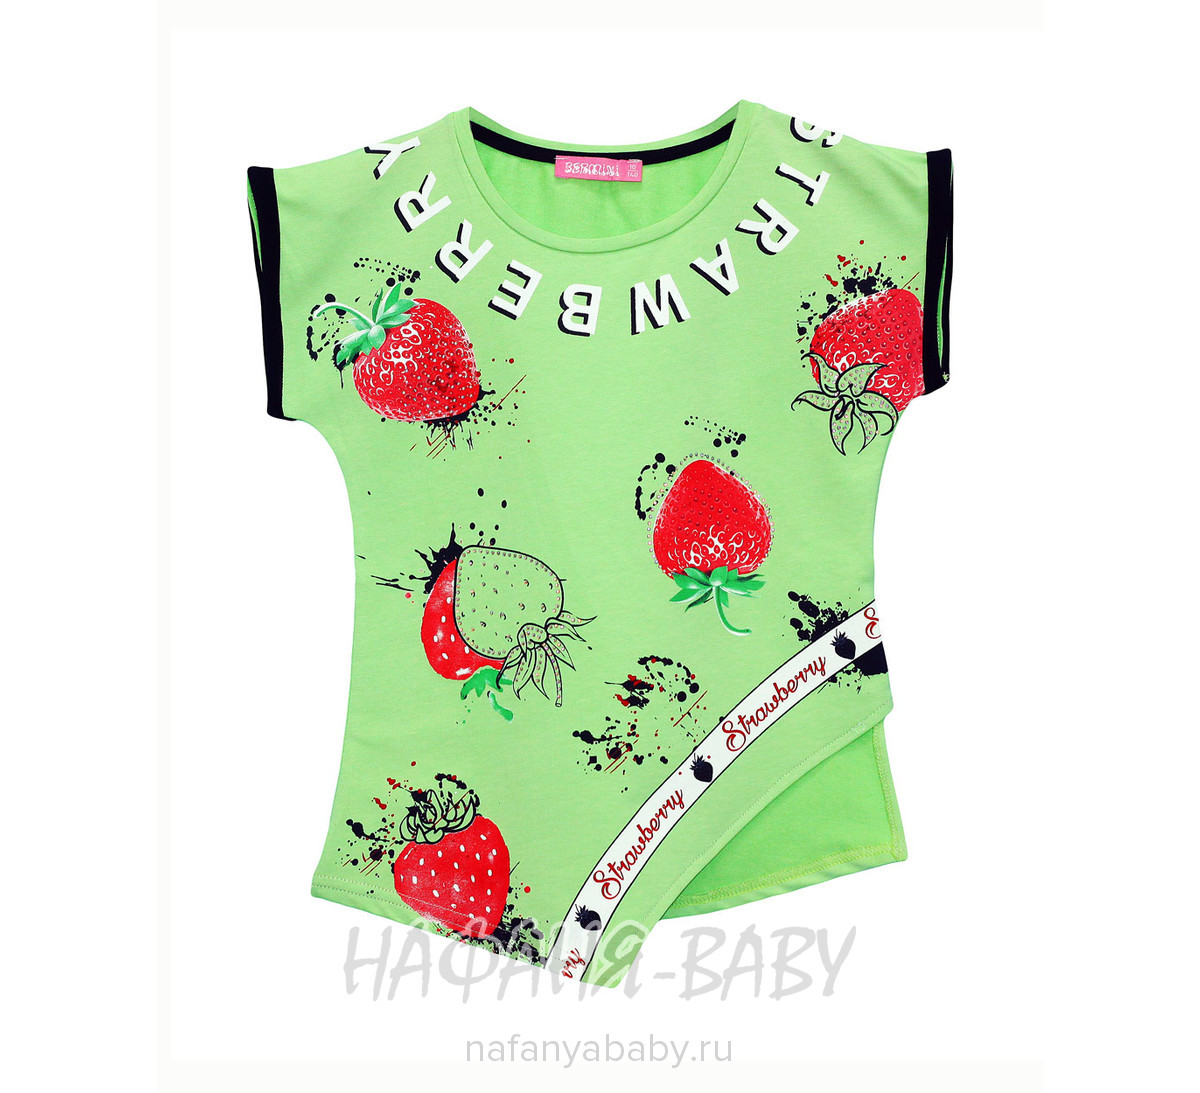 Детская футболка BERMINI арт: 6399, 10-15 лет, цвет зеленый, оптом Турция